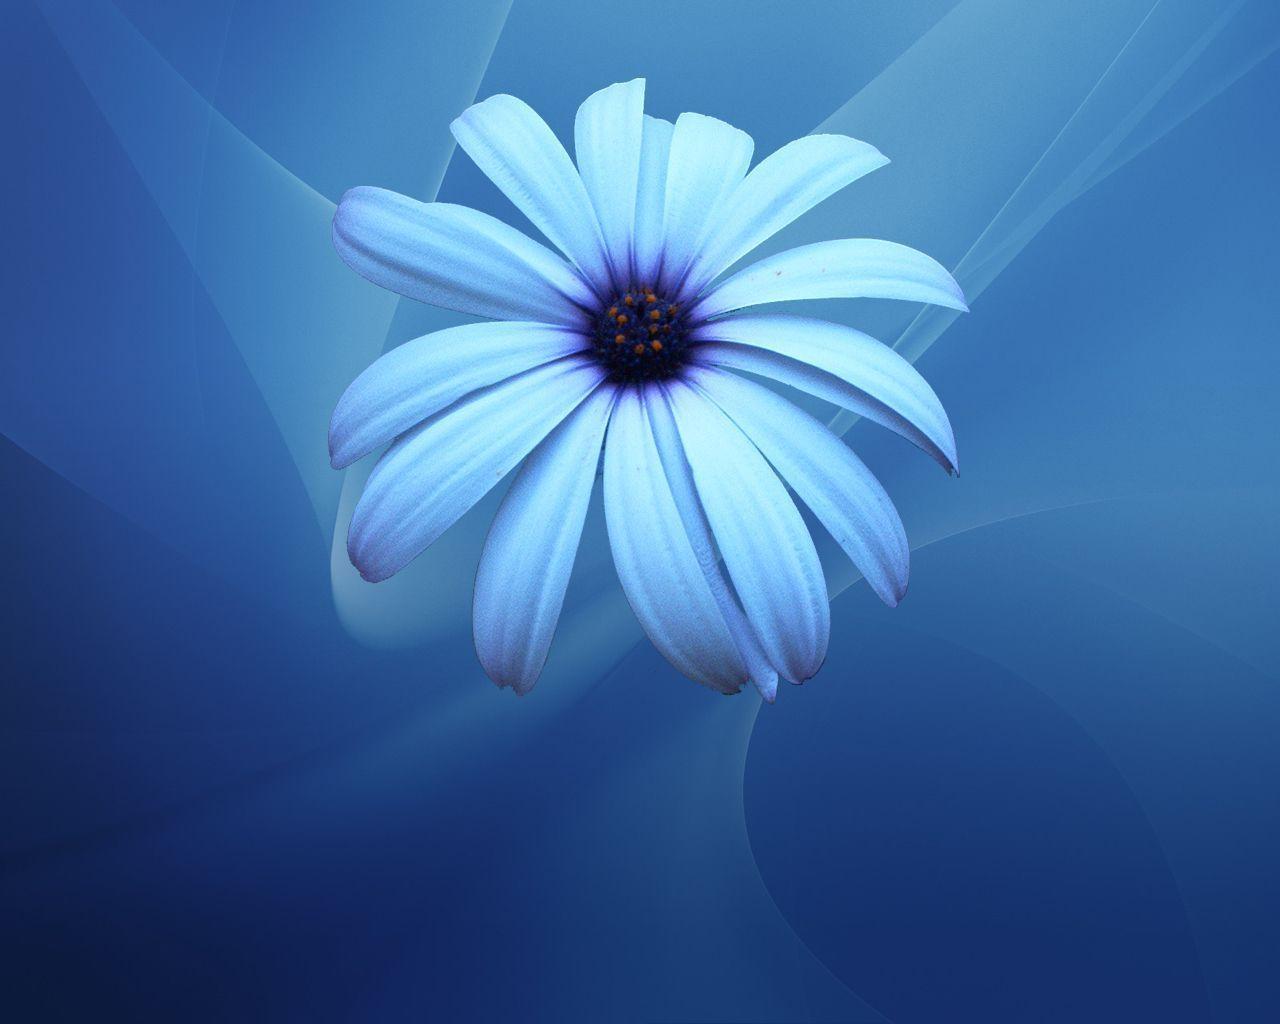 Wallpaper For > Blue Flower Wallpaper Designs